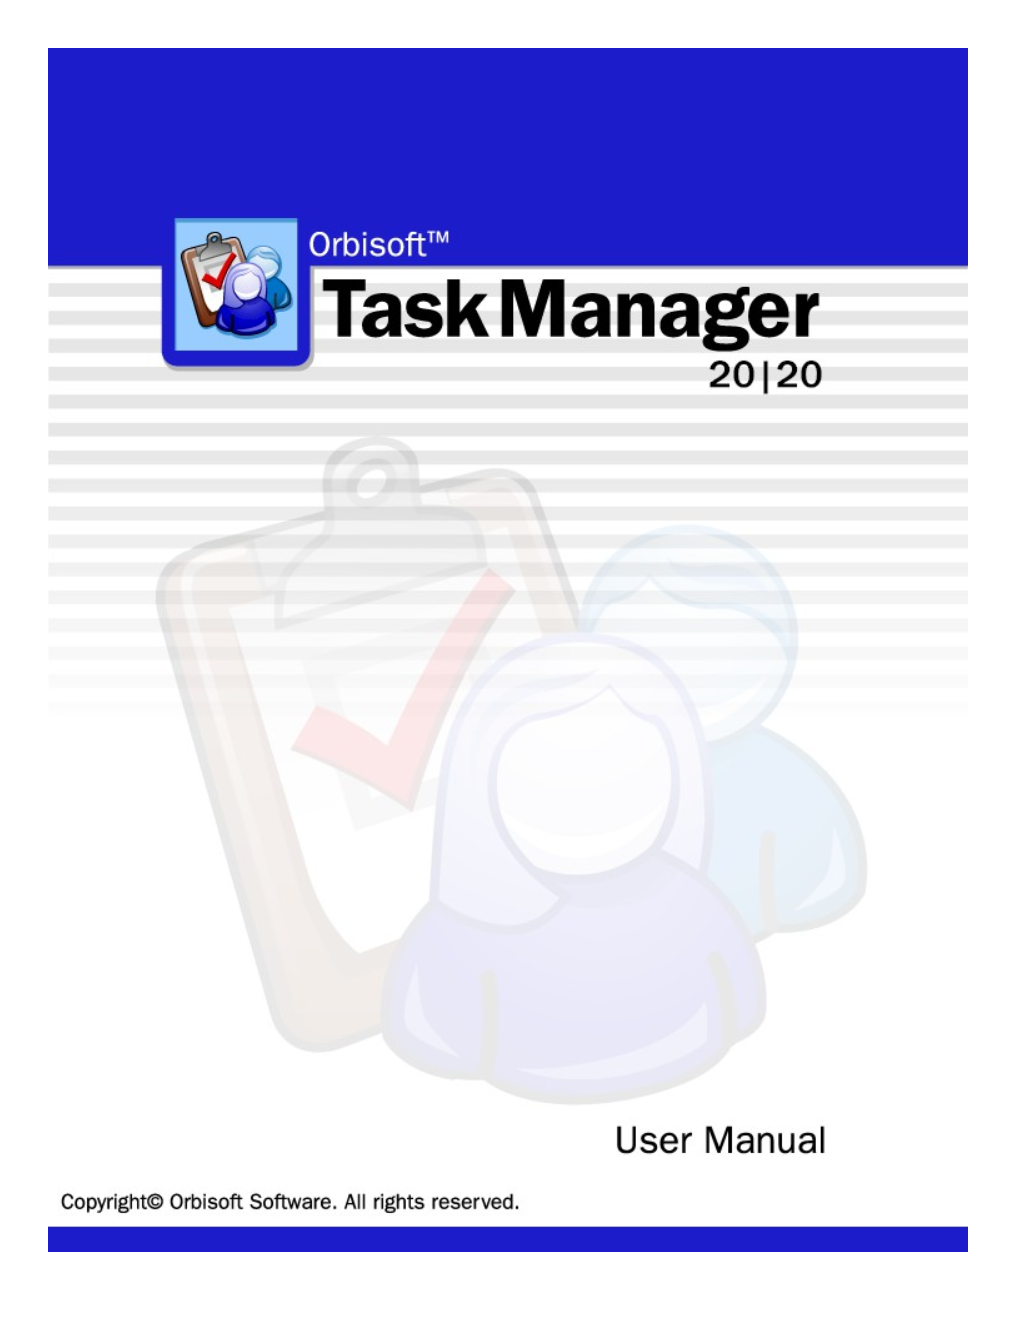 Orbisoft Task Manager 2007 User Manual